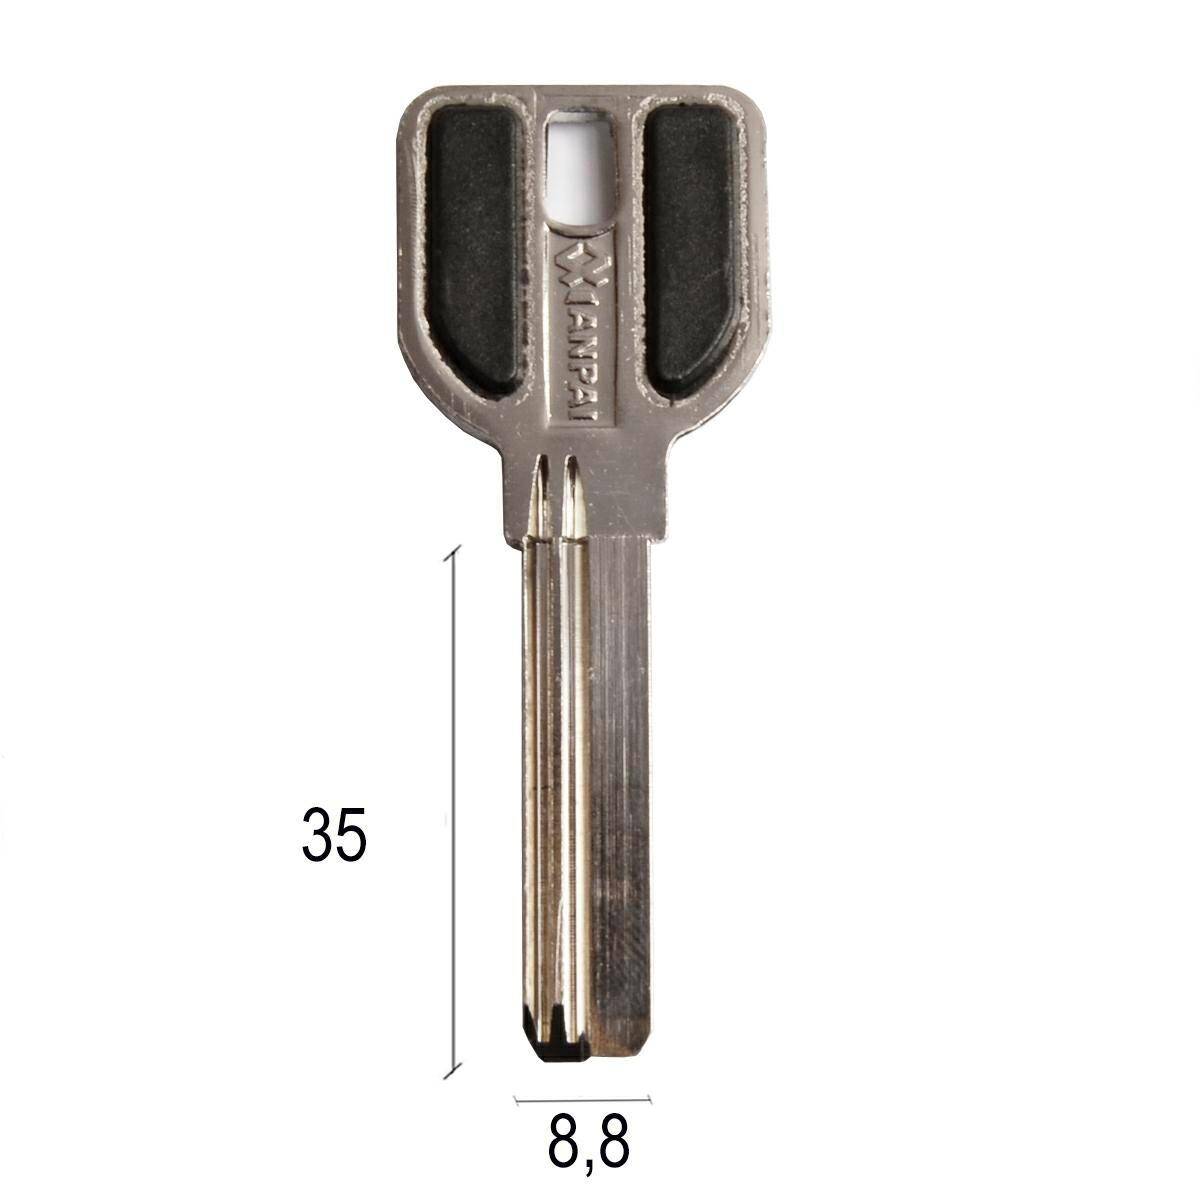 Chinese key 35 x 8,8 x 2,3